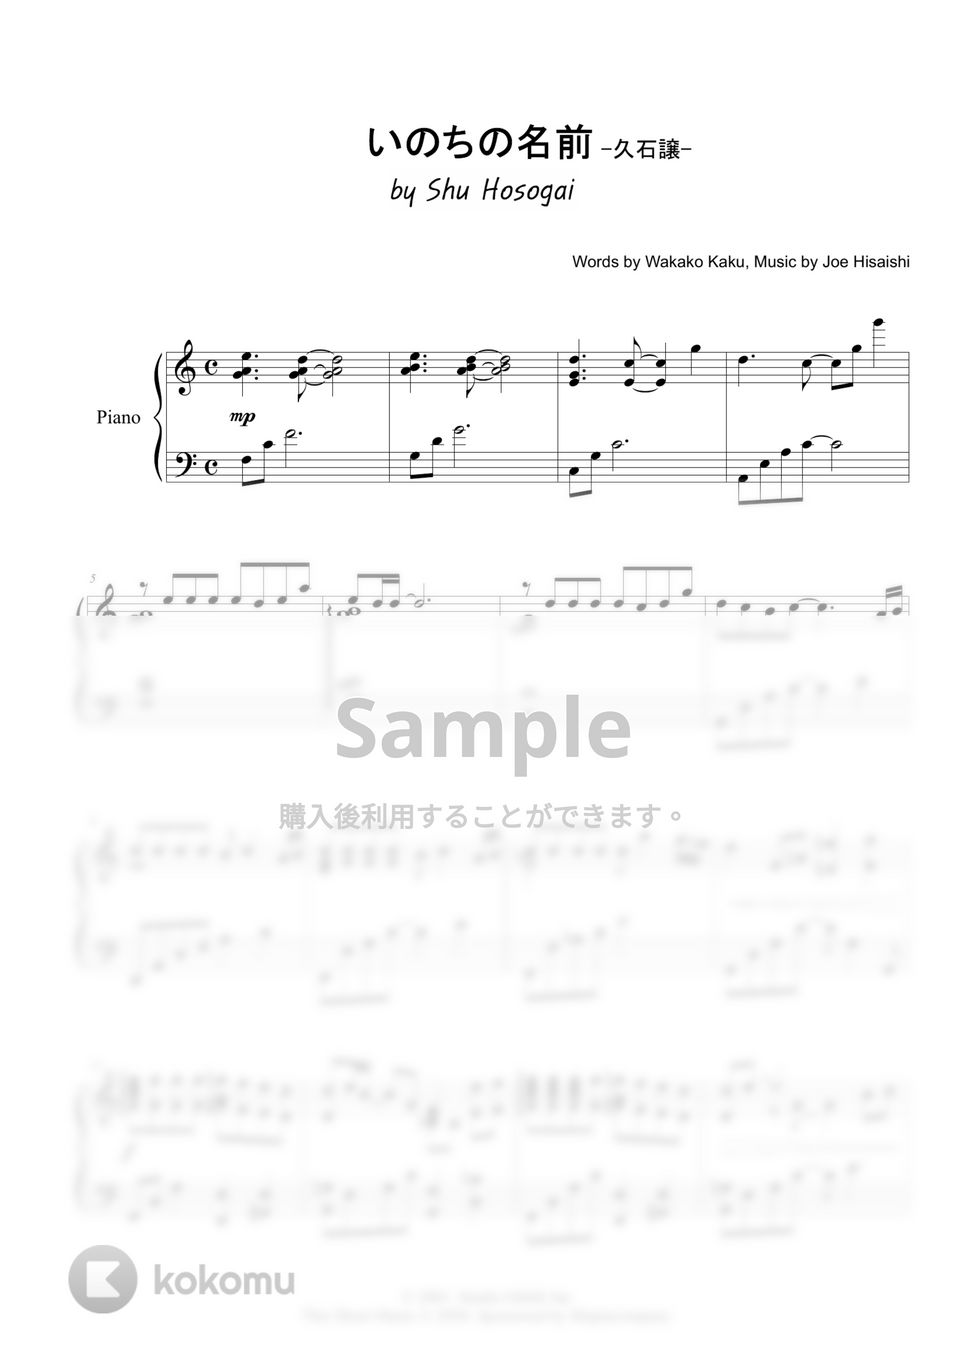 久石譲 - いのちの名前 (ピアノソロ中級) by 細貝 柊